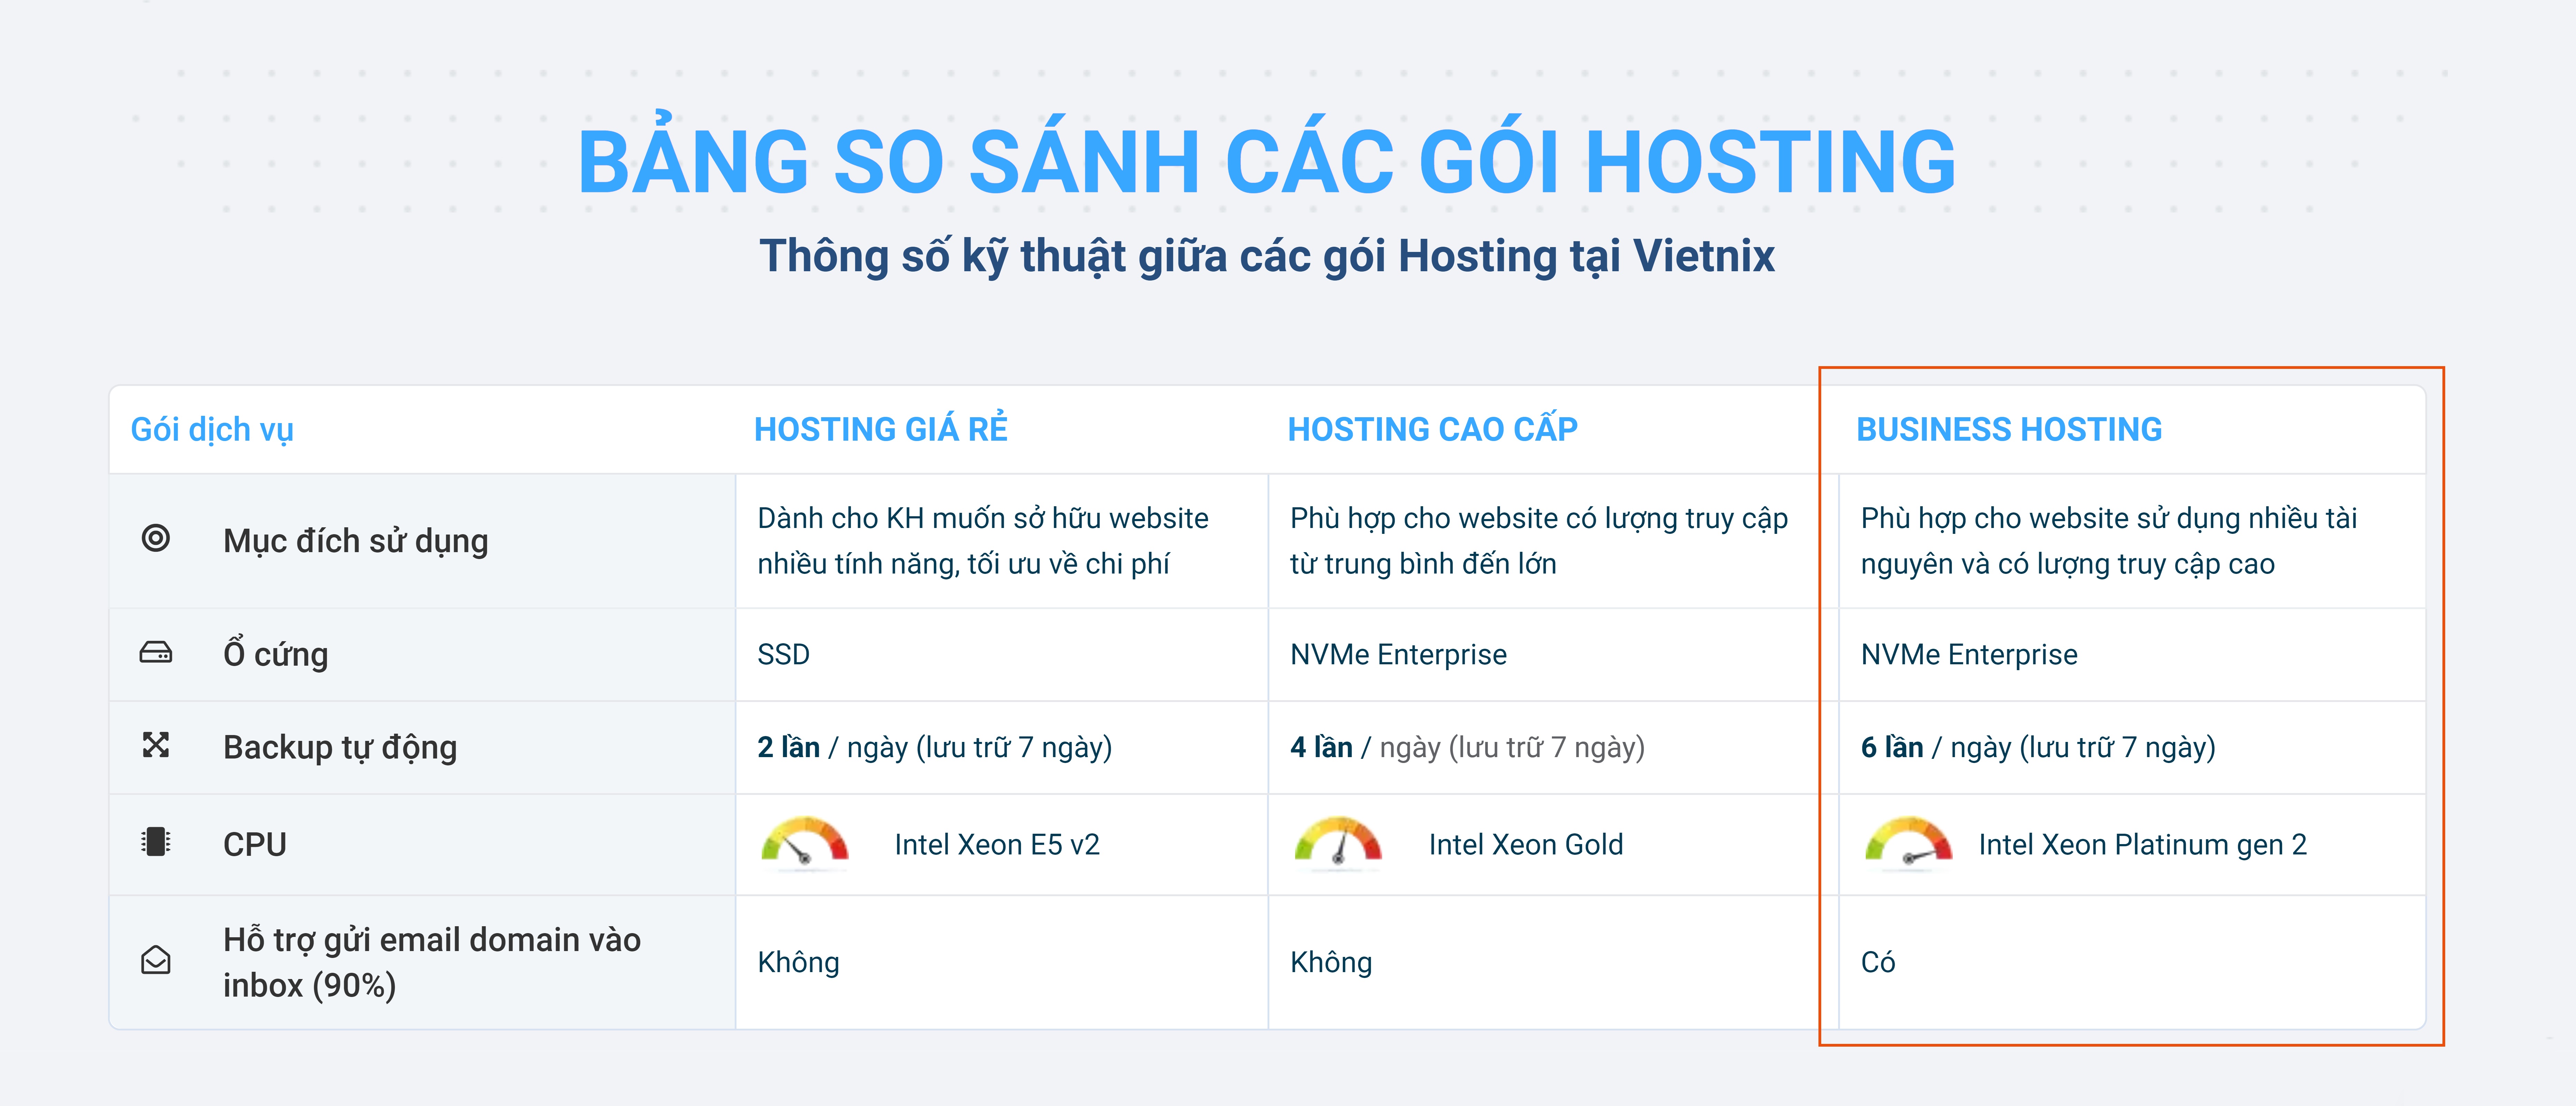 So sánh dịch vụ hosting doanh nghiệp của Vietnix so với các dịch vụ hosting khác của họ